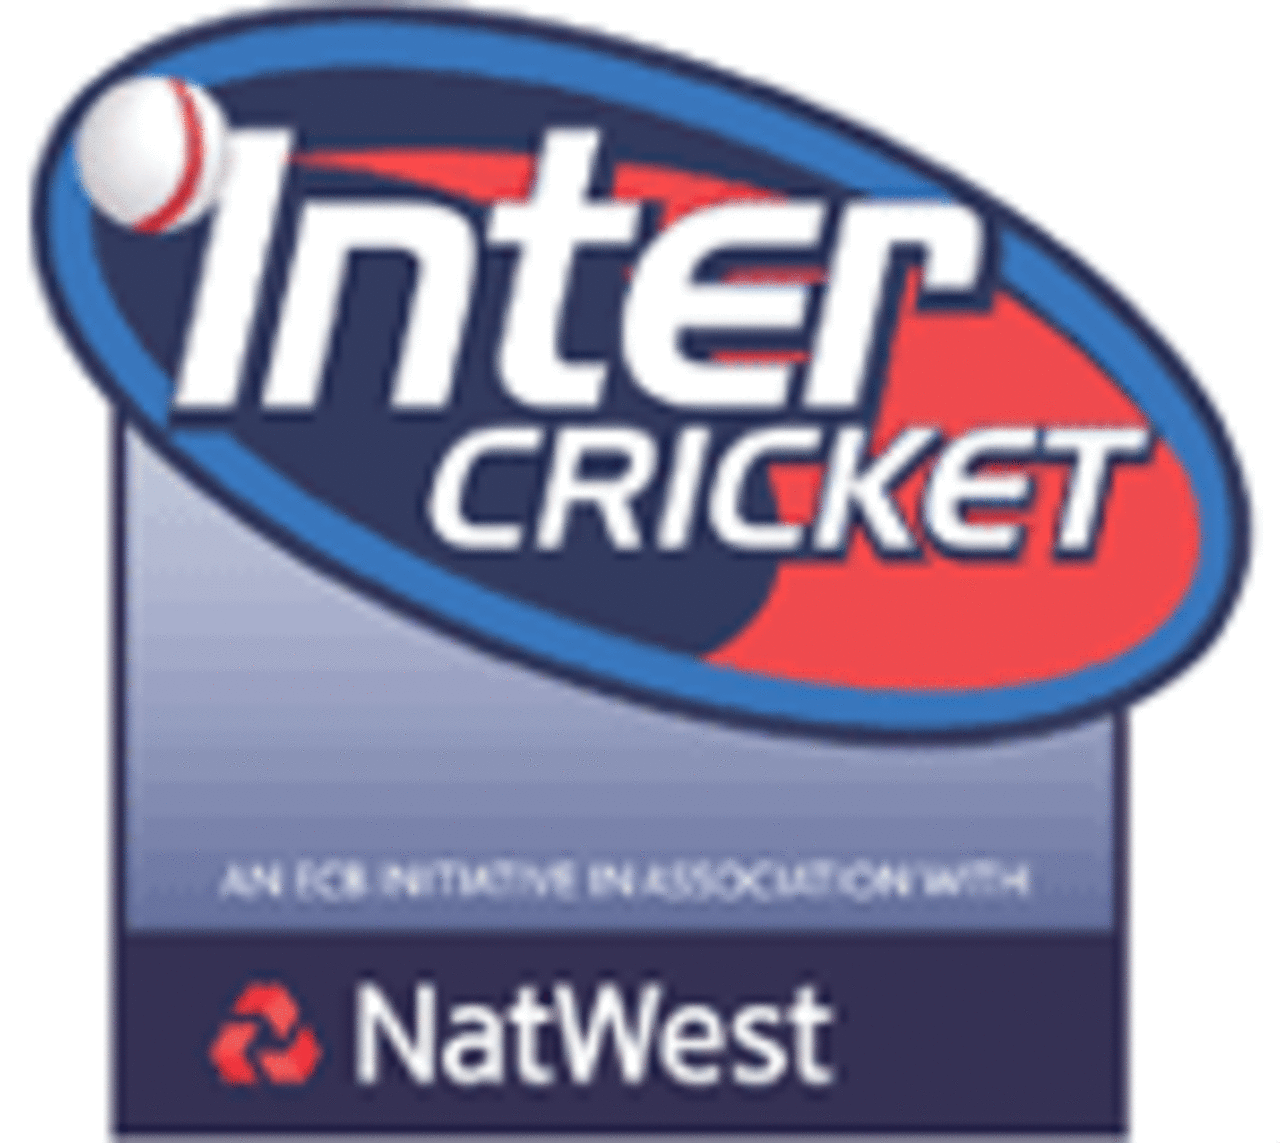 Inter Cricket